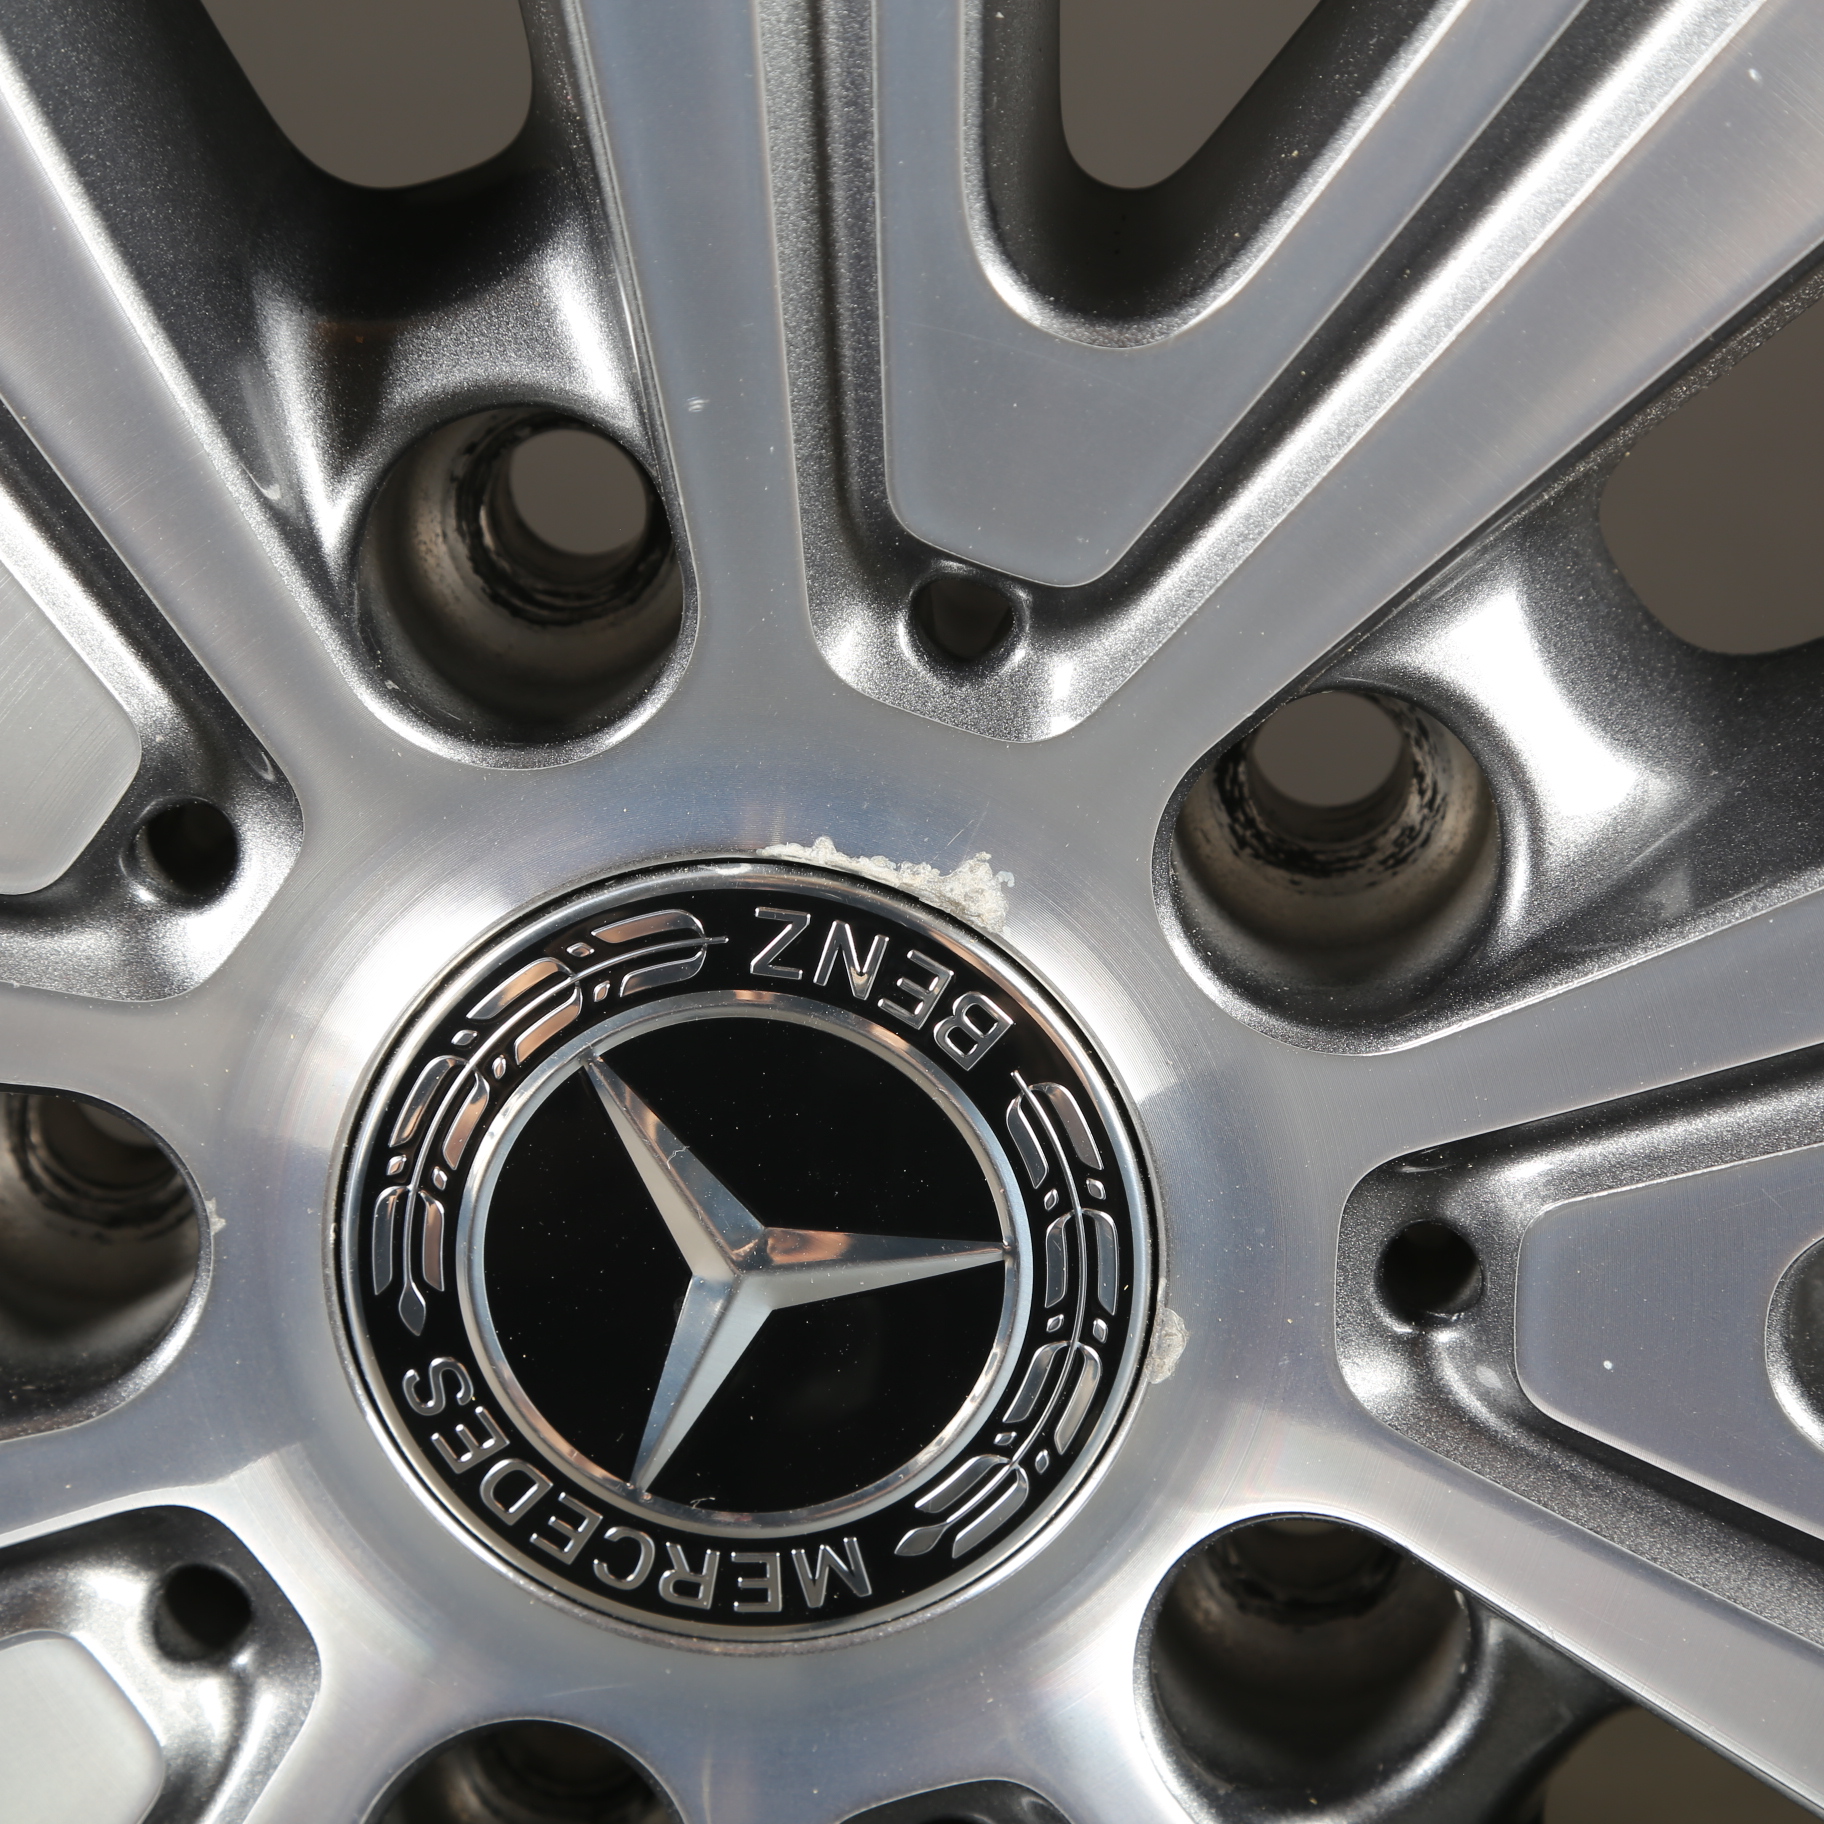 Llantas de invierno de 19 pulgadas originales Mercedes Clase G W463 Neumáticos de invierno A4634011100